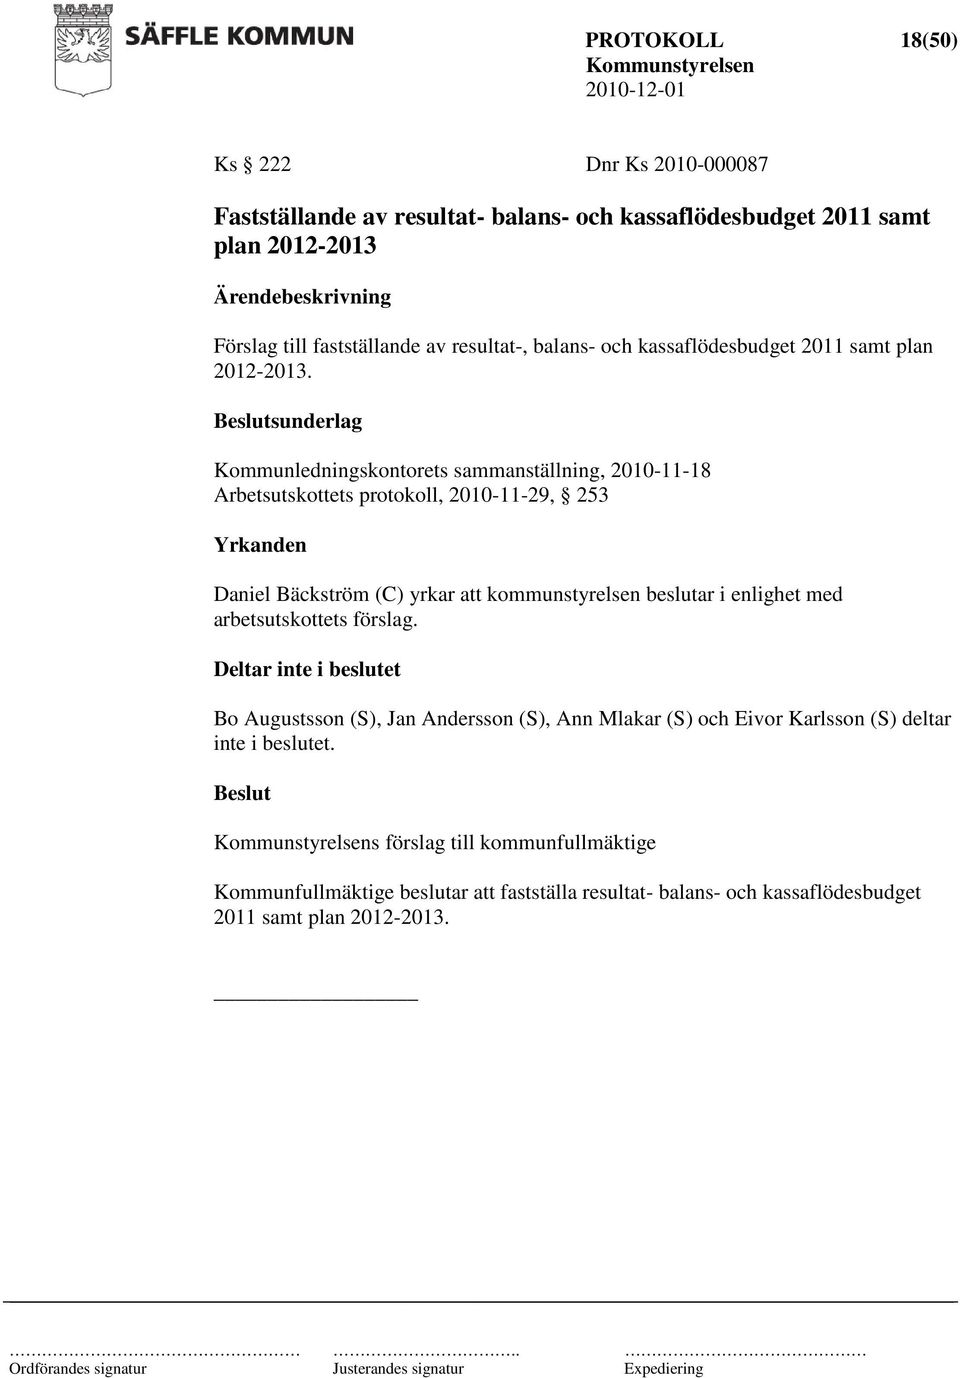 Kommunledningskontorets sammanställning, 2010-11-18 Arbetsutskottets protokoll, 2010-11-29, 253 Deltar inte i beslutet Bo Augustsson (S), Jan